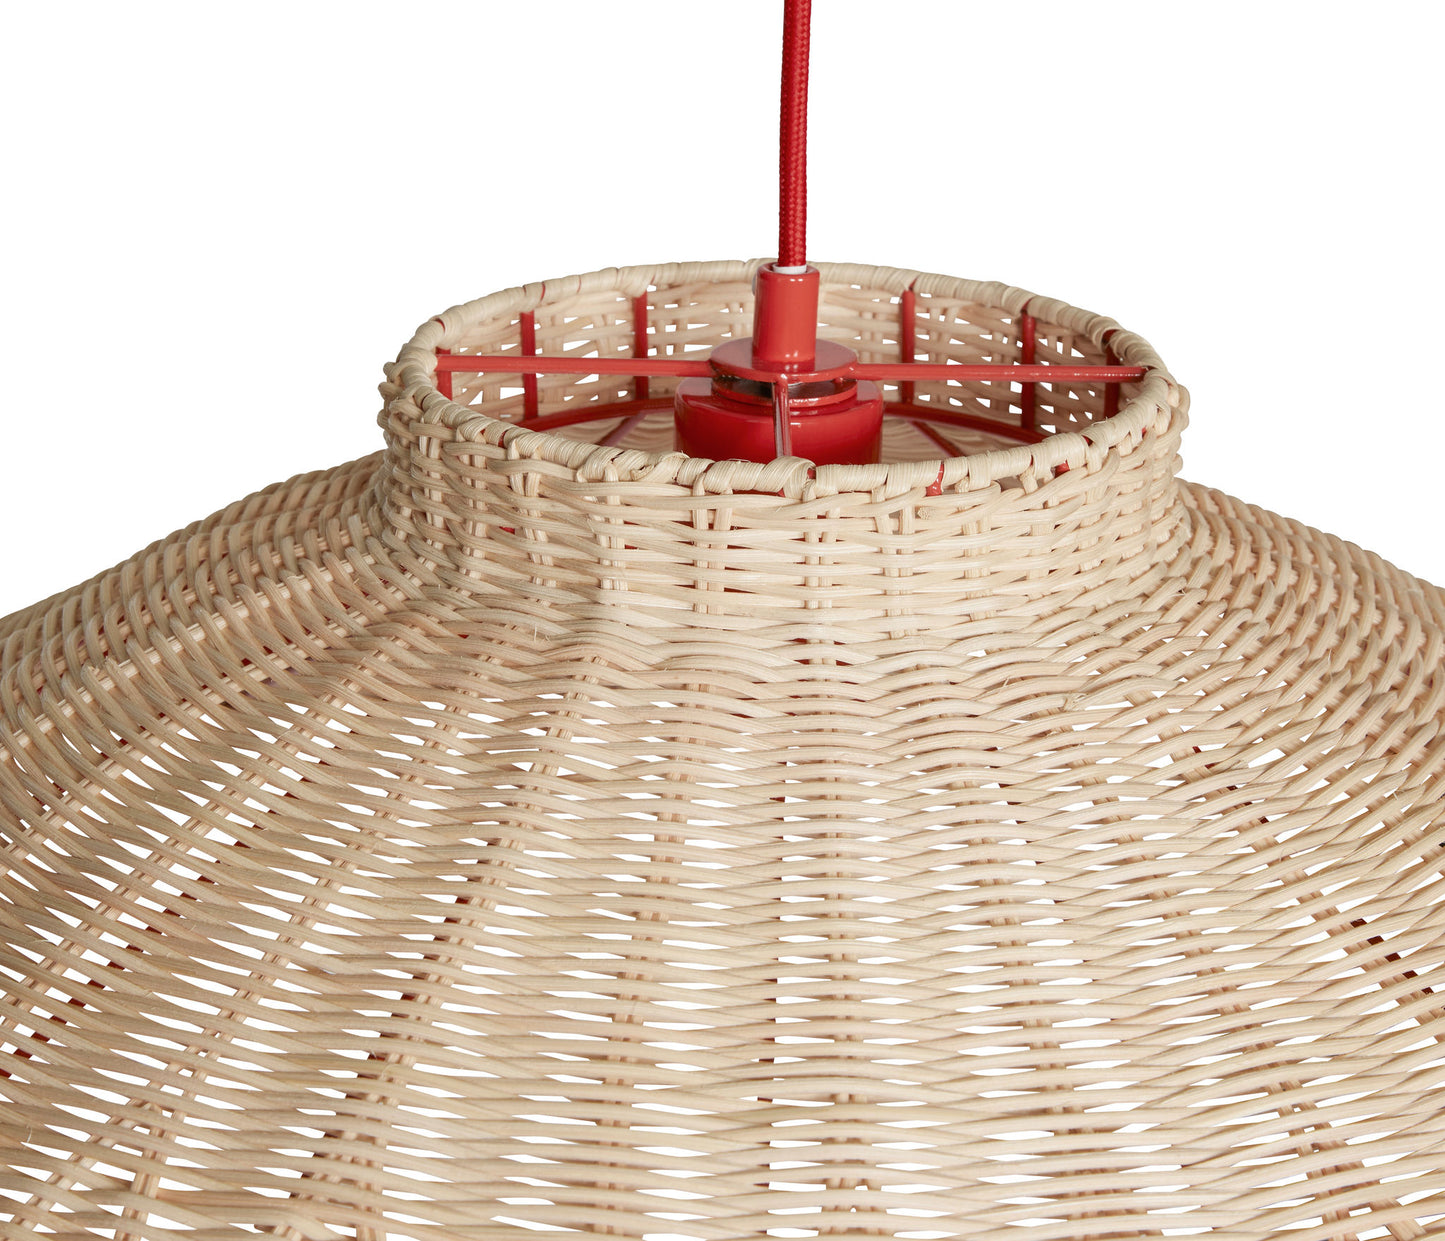 Chand - Stor loftslampe i trapez-form med rød stofledning